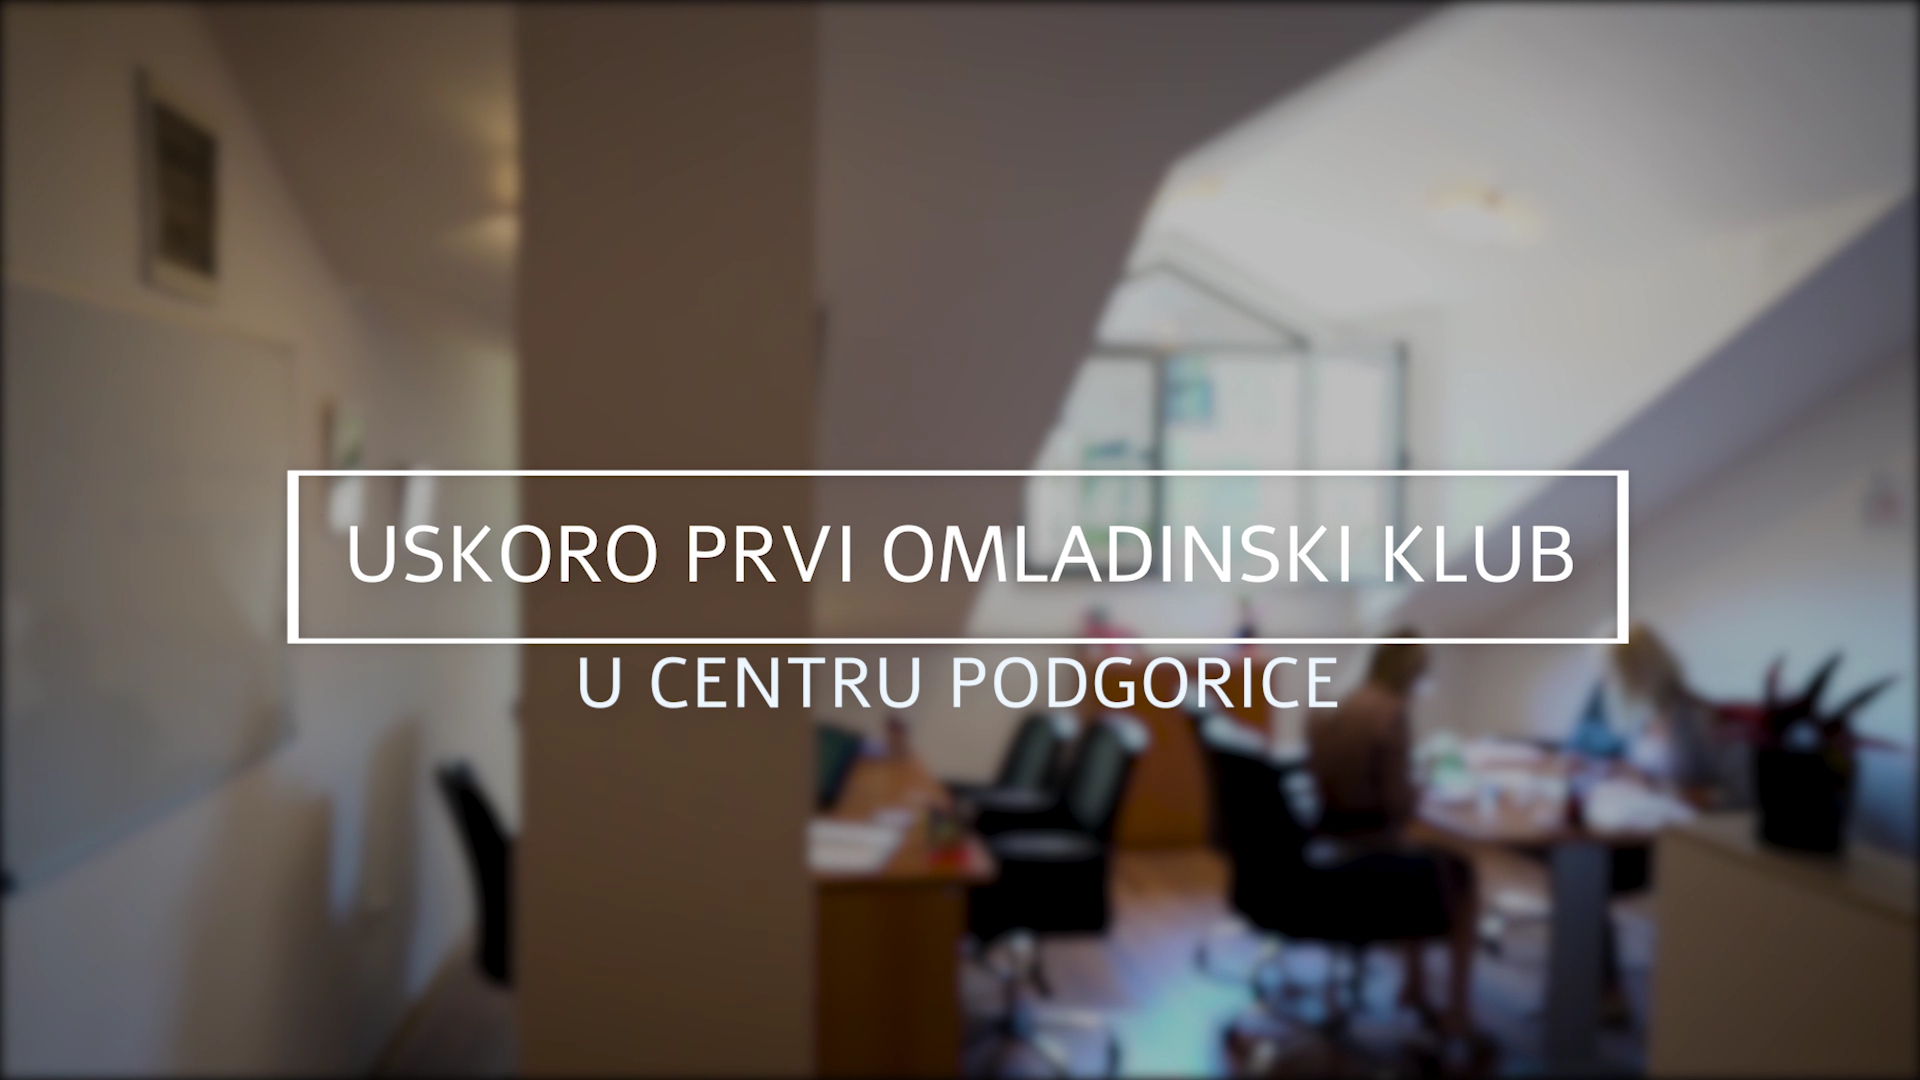 Novo mjesto za okupljanje mladih; Glavni grad u centru Podgorice otvara Omladinski klub